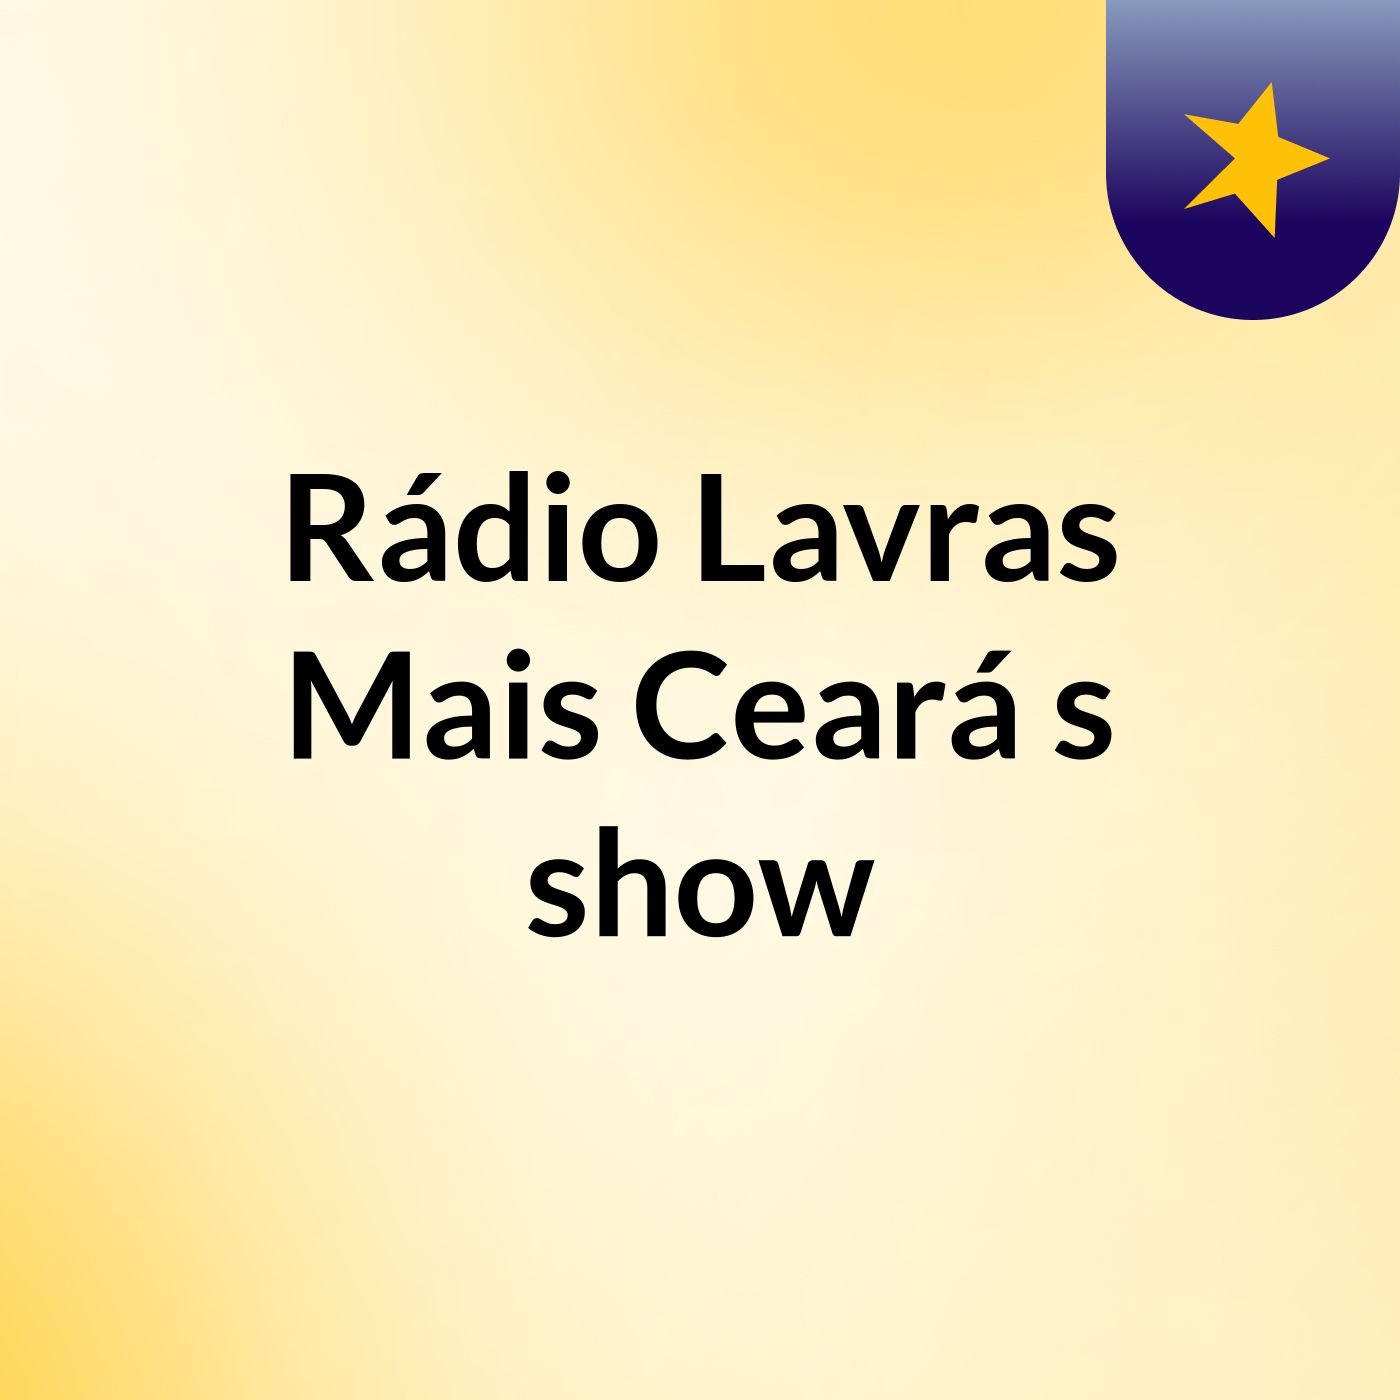 Rádio Lavras Mais Ceará's show